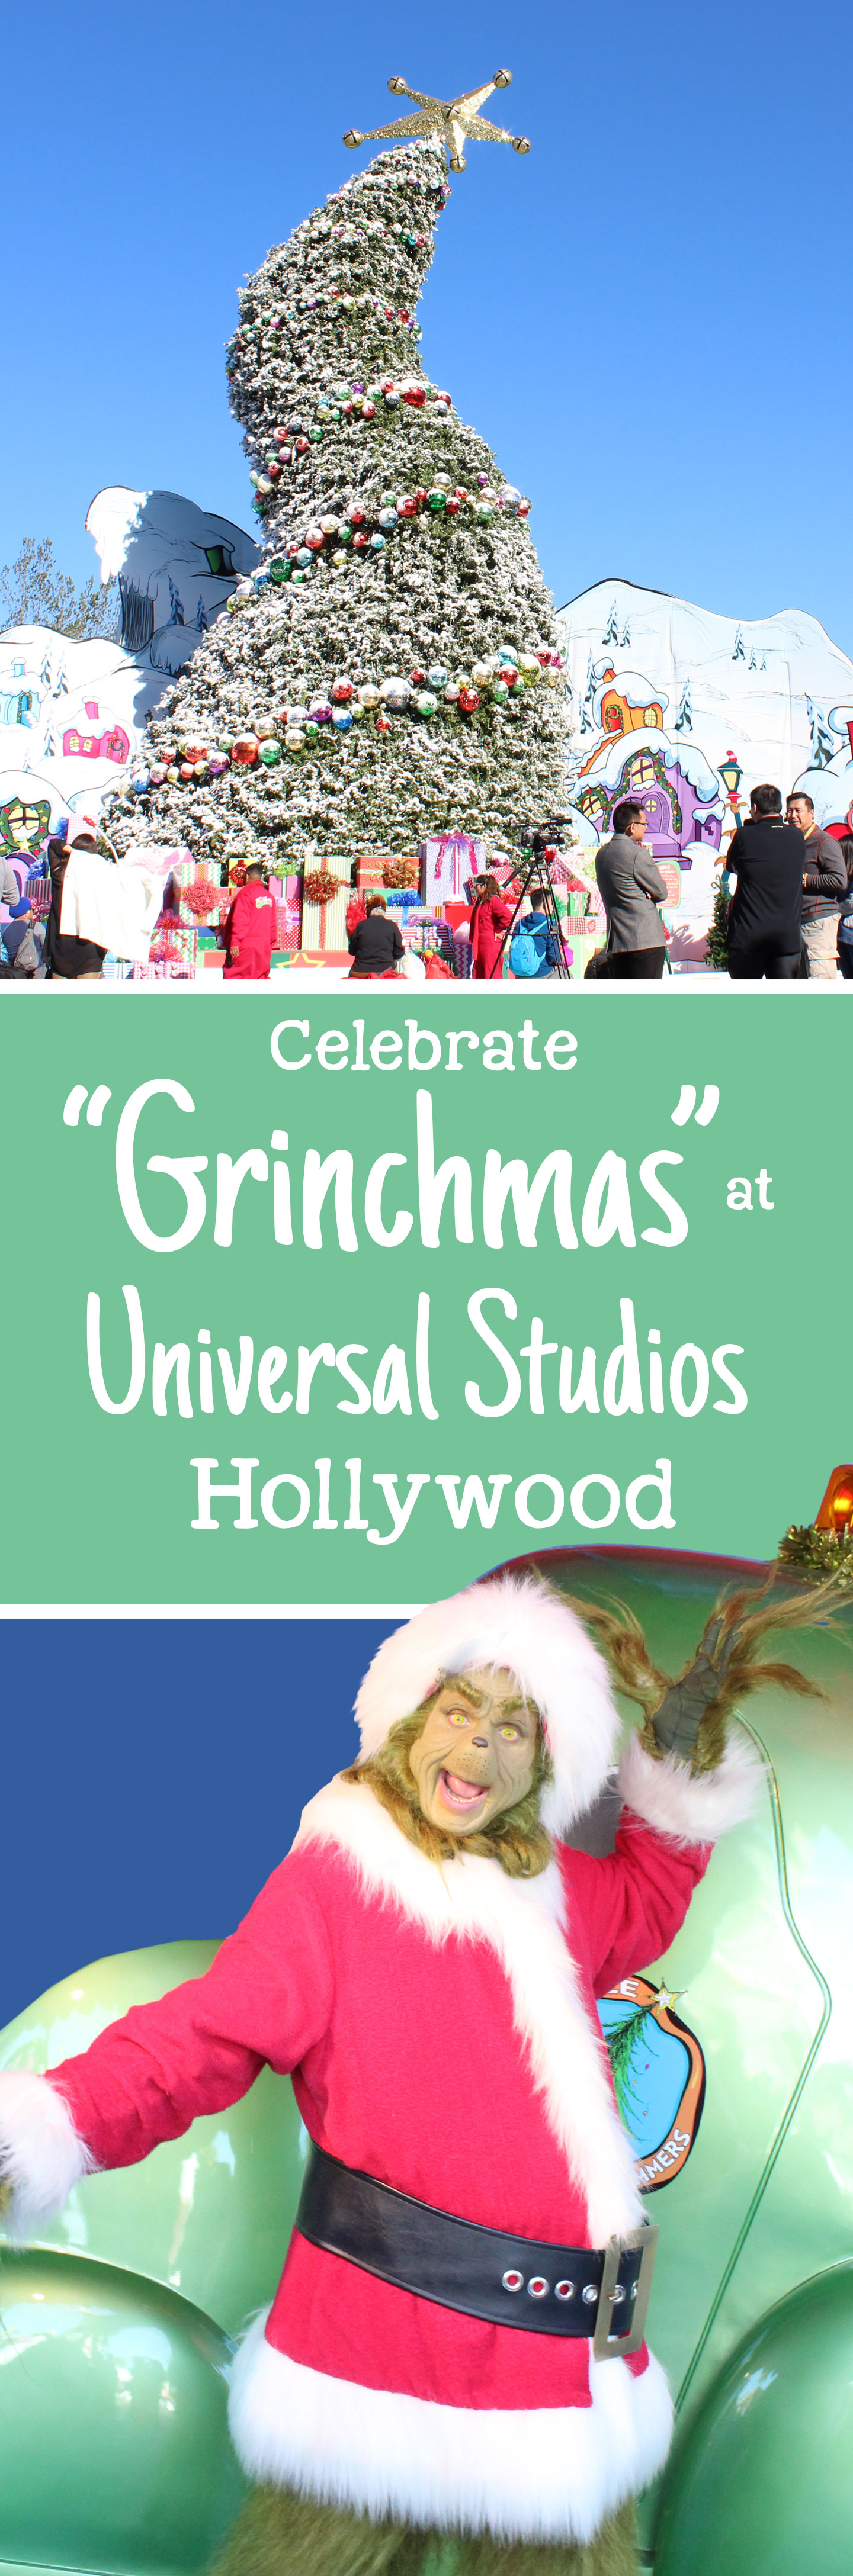 grinchmas at universal studios hollywood